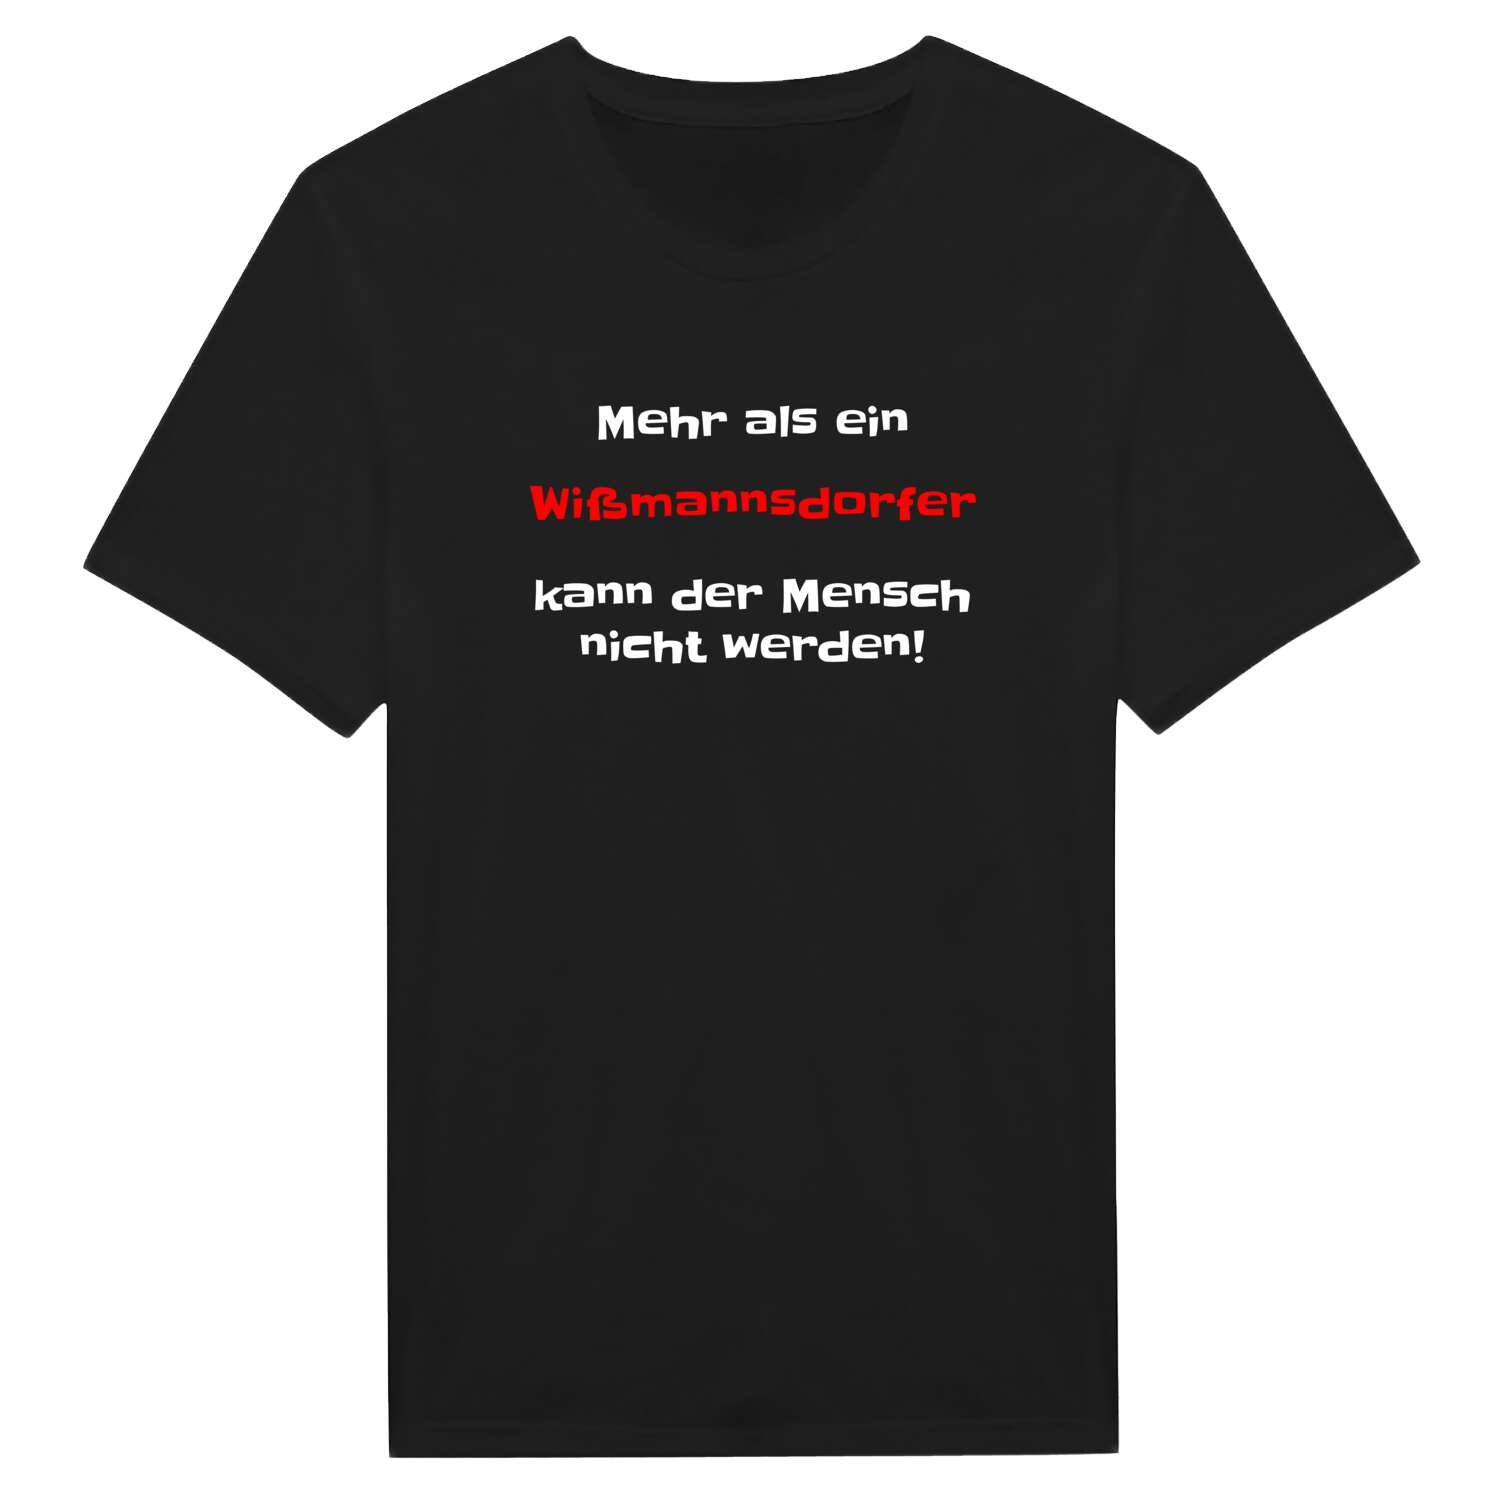 Wißmannsdorf T-Shirt »Mehr als ein«